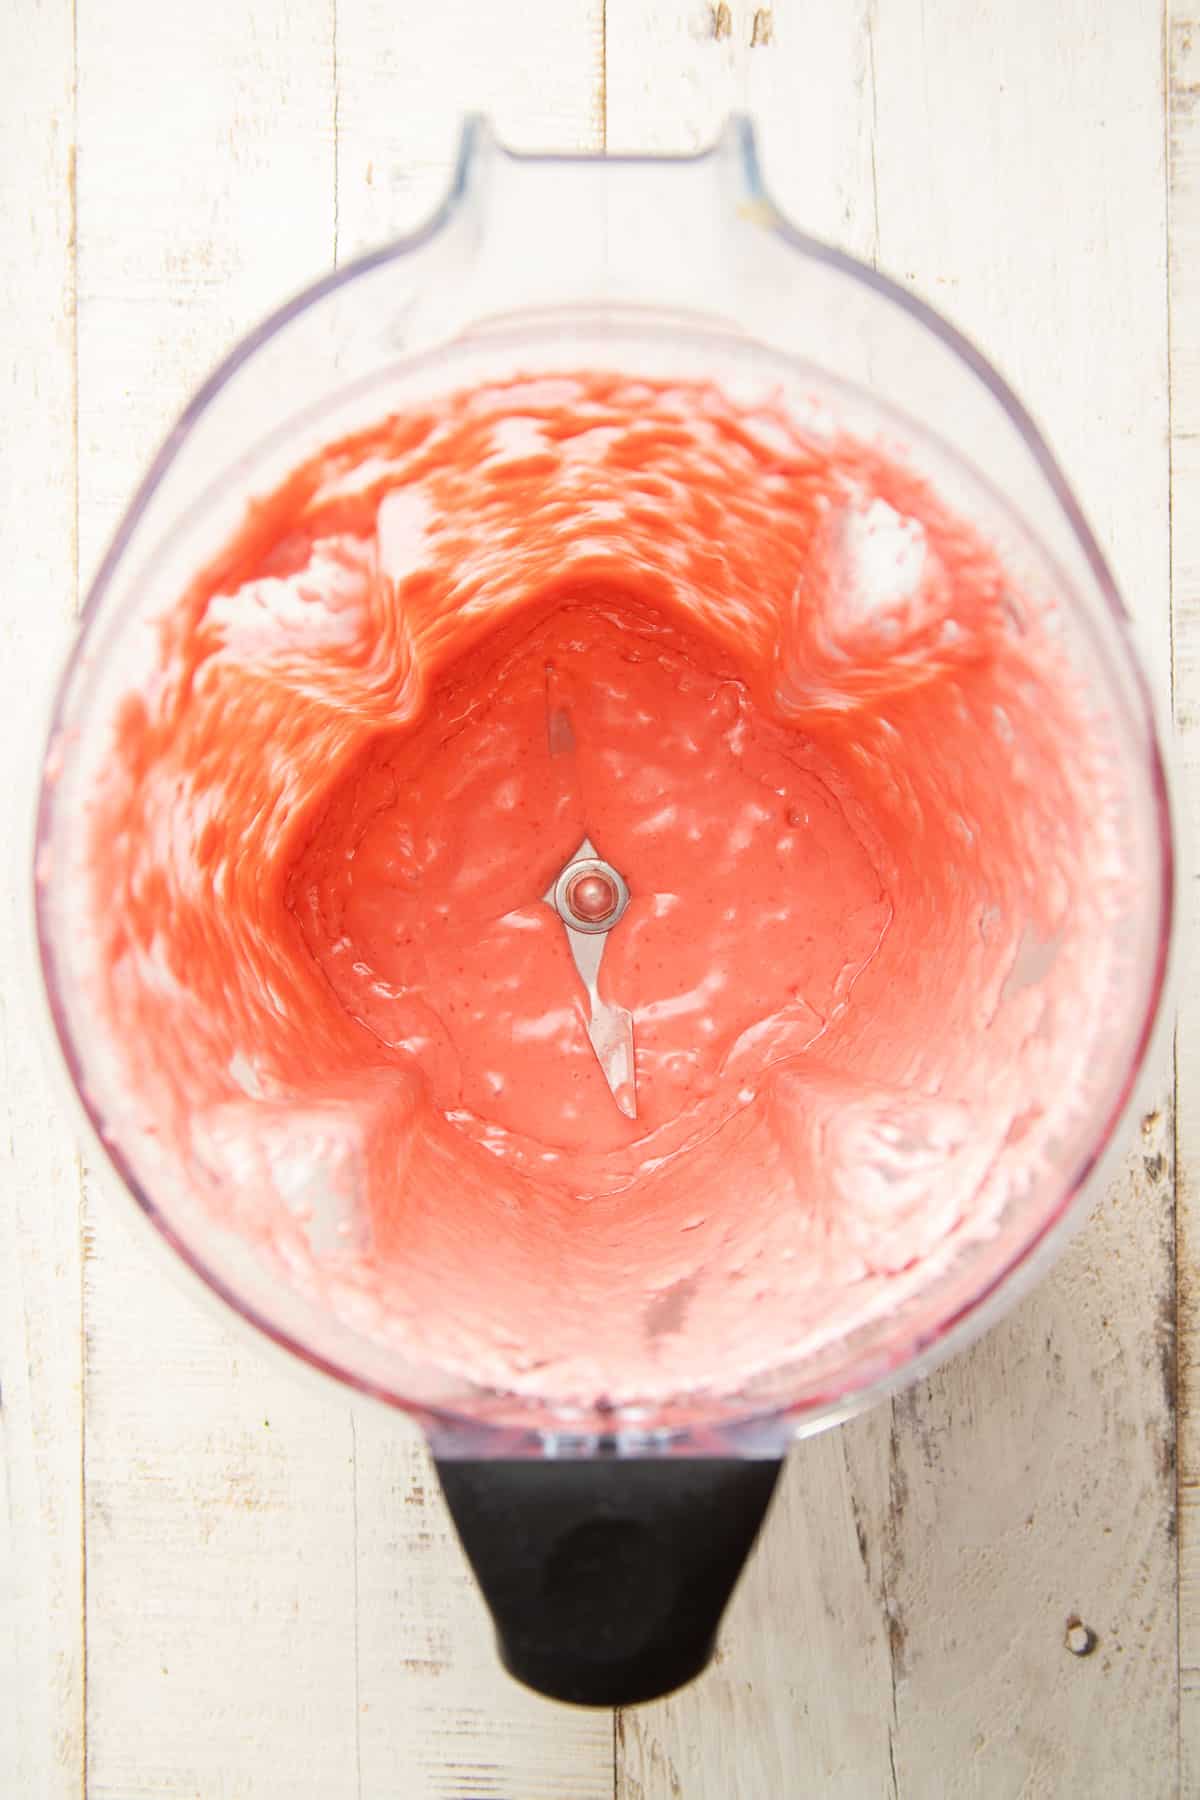 Raspberry vinaigrette in a blender.